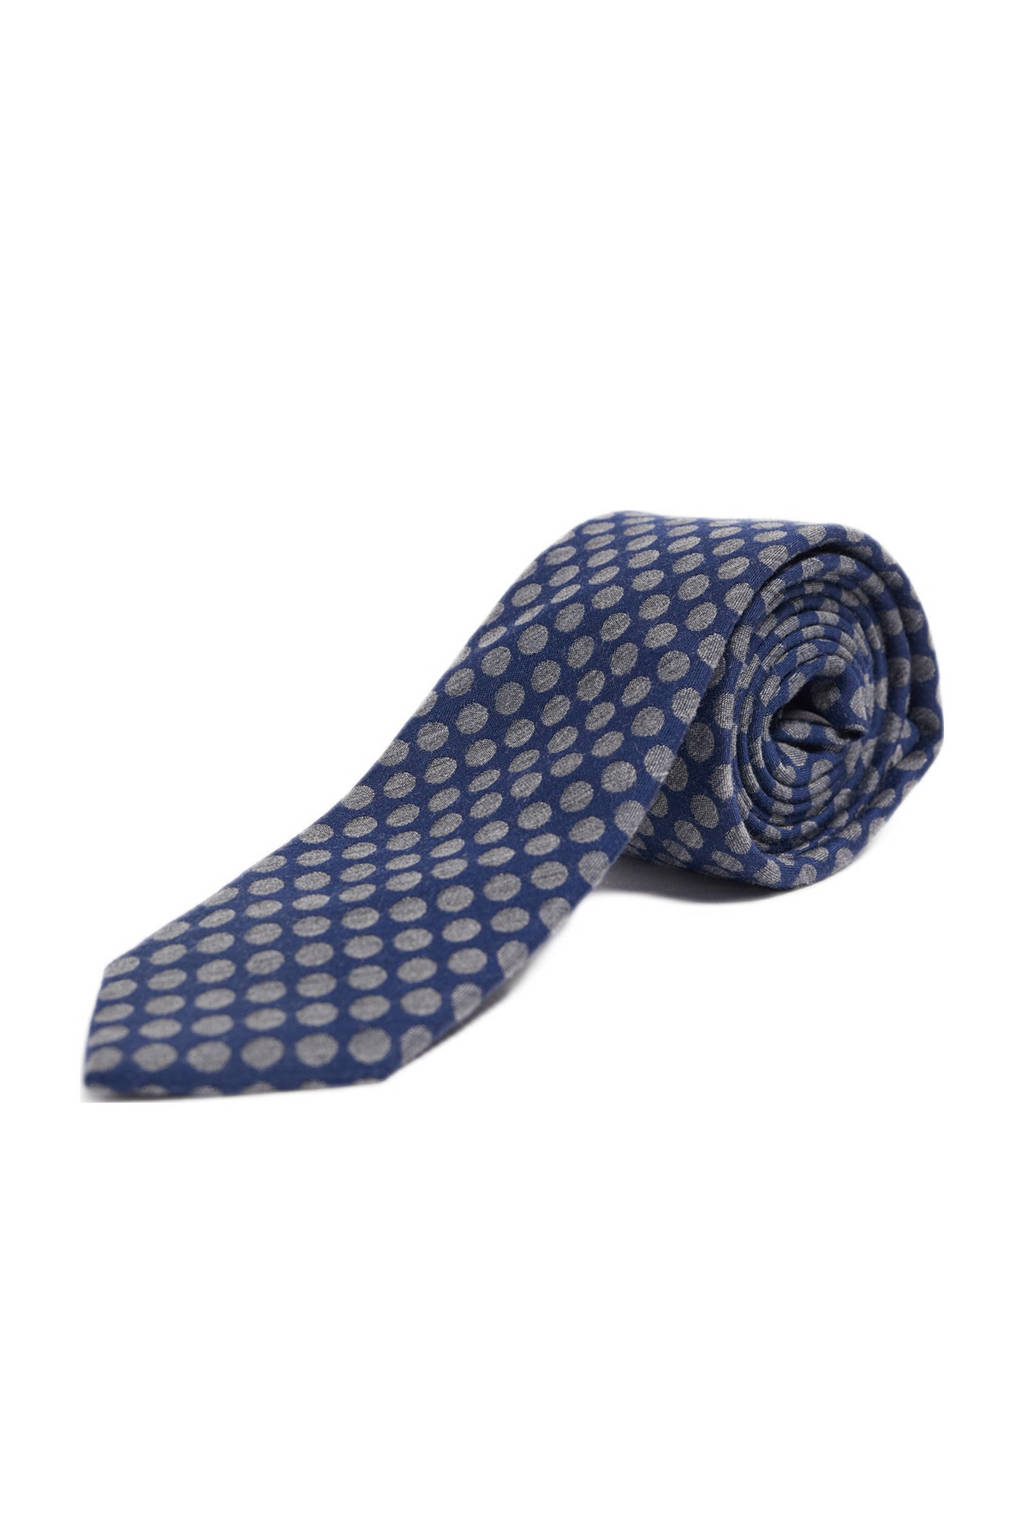 Fashion stropdas met stippenprint donkerblauw | wehkamp